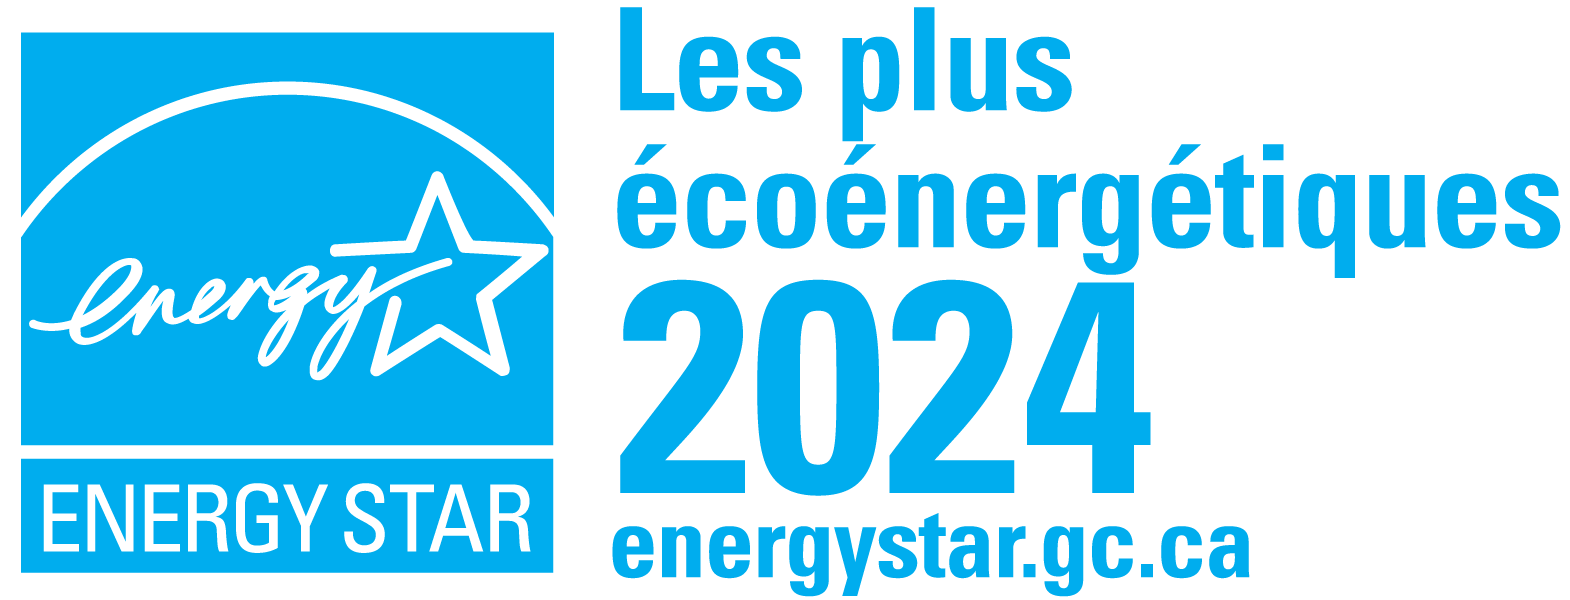 Les plus éconergétiques Energy Star 2024